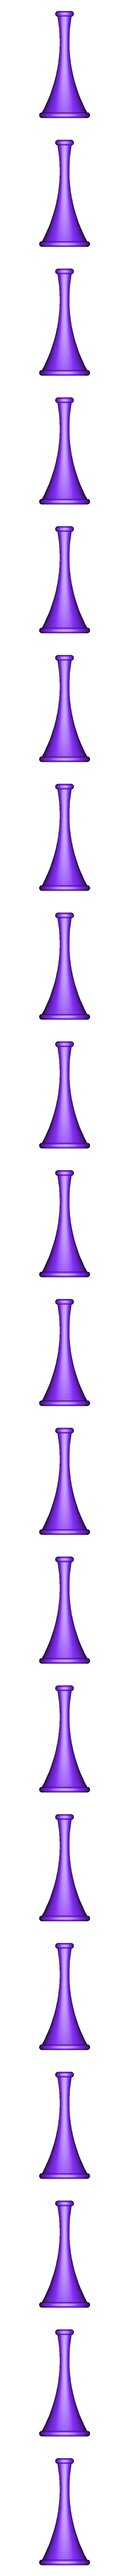 Mosquito.stl Бесплатный STL файл Mosquito nose・3D-печатная модель для загрузки, RandomCosplay